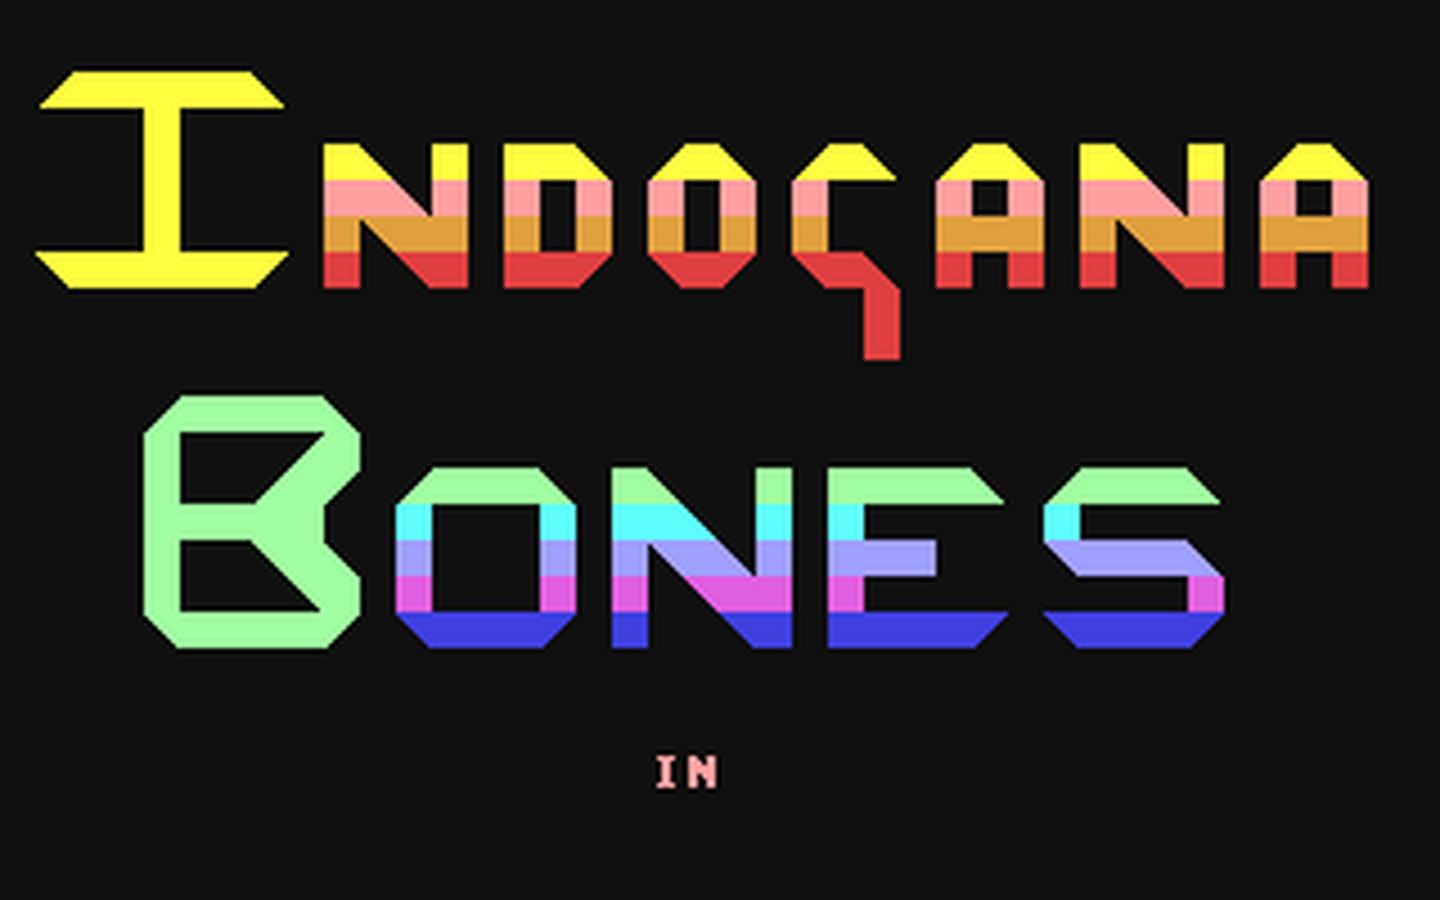 C64 GameBase Indogana_Bones_in_Raiders_of_the_Last_Bark Argus_Specialist_Publications_Ltd./Computer_Gamer 1986